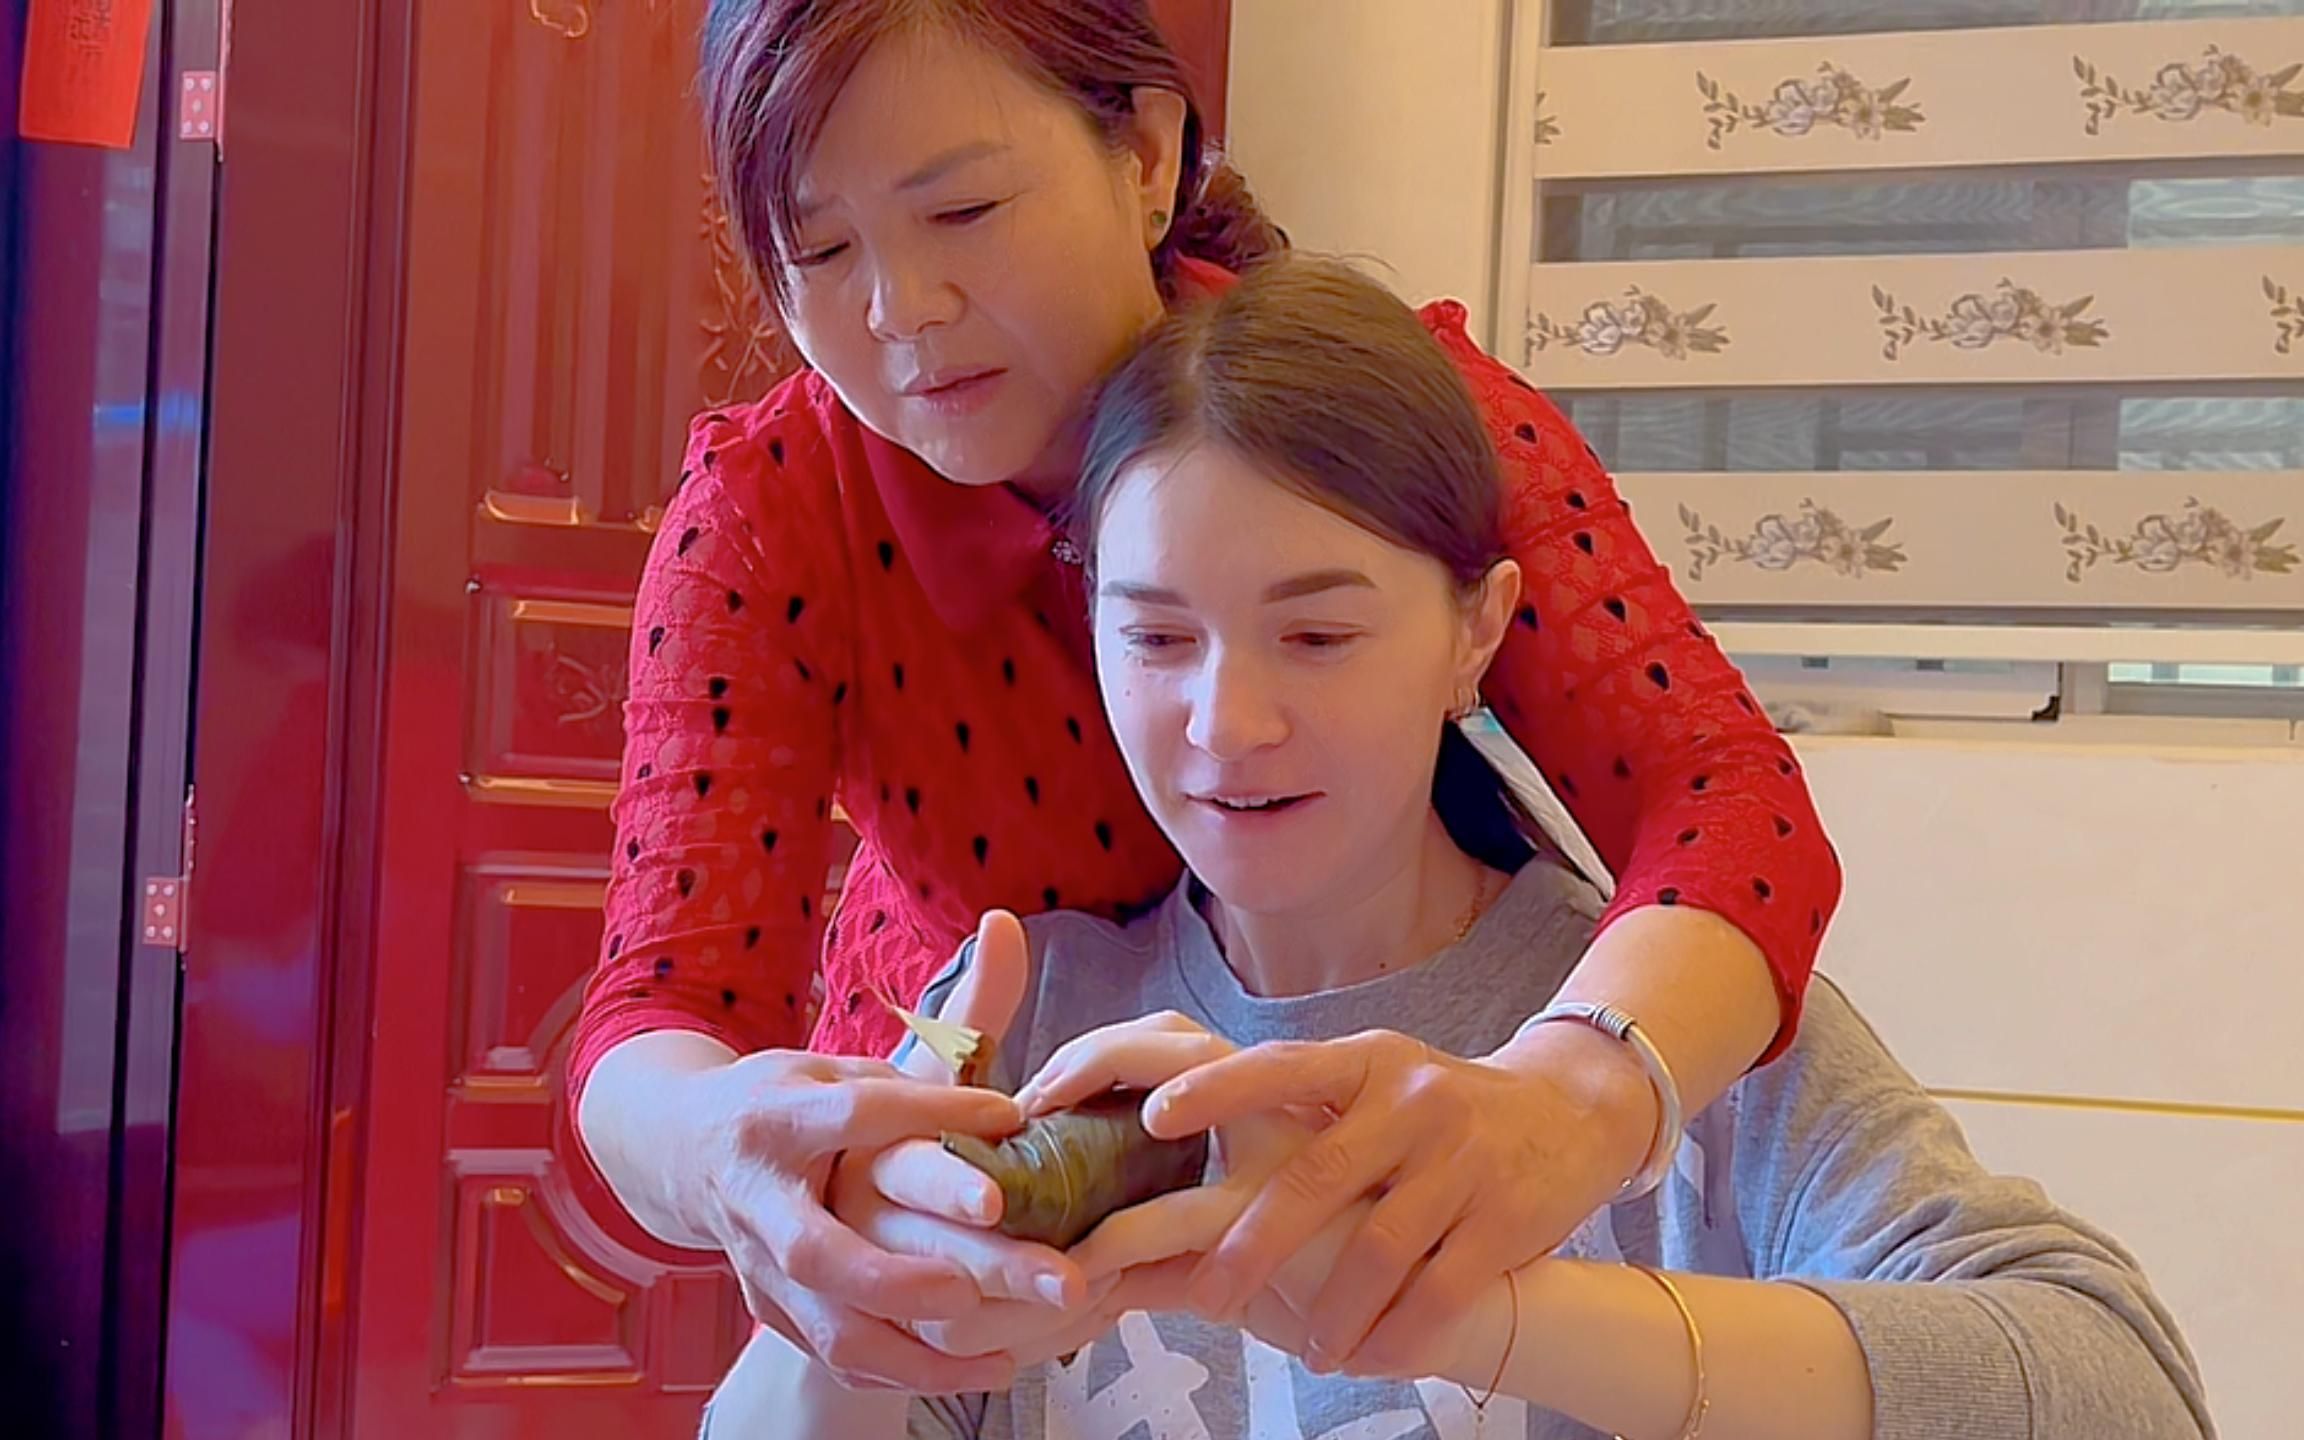 洋媳妇和中国婆婆第一次学习包粽子,整个过程让人哭笑不得!